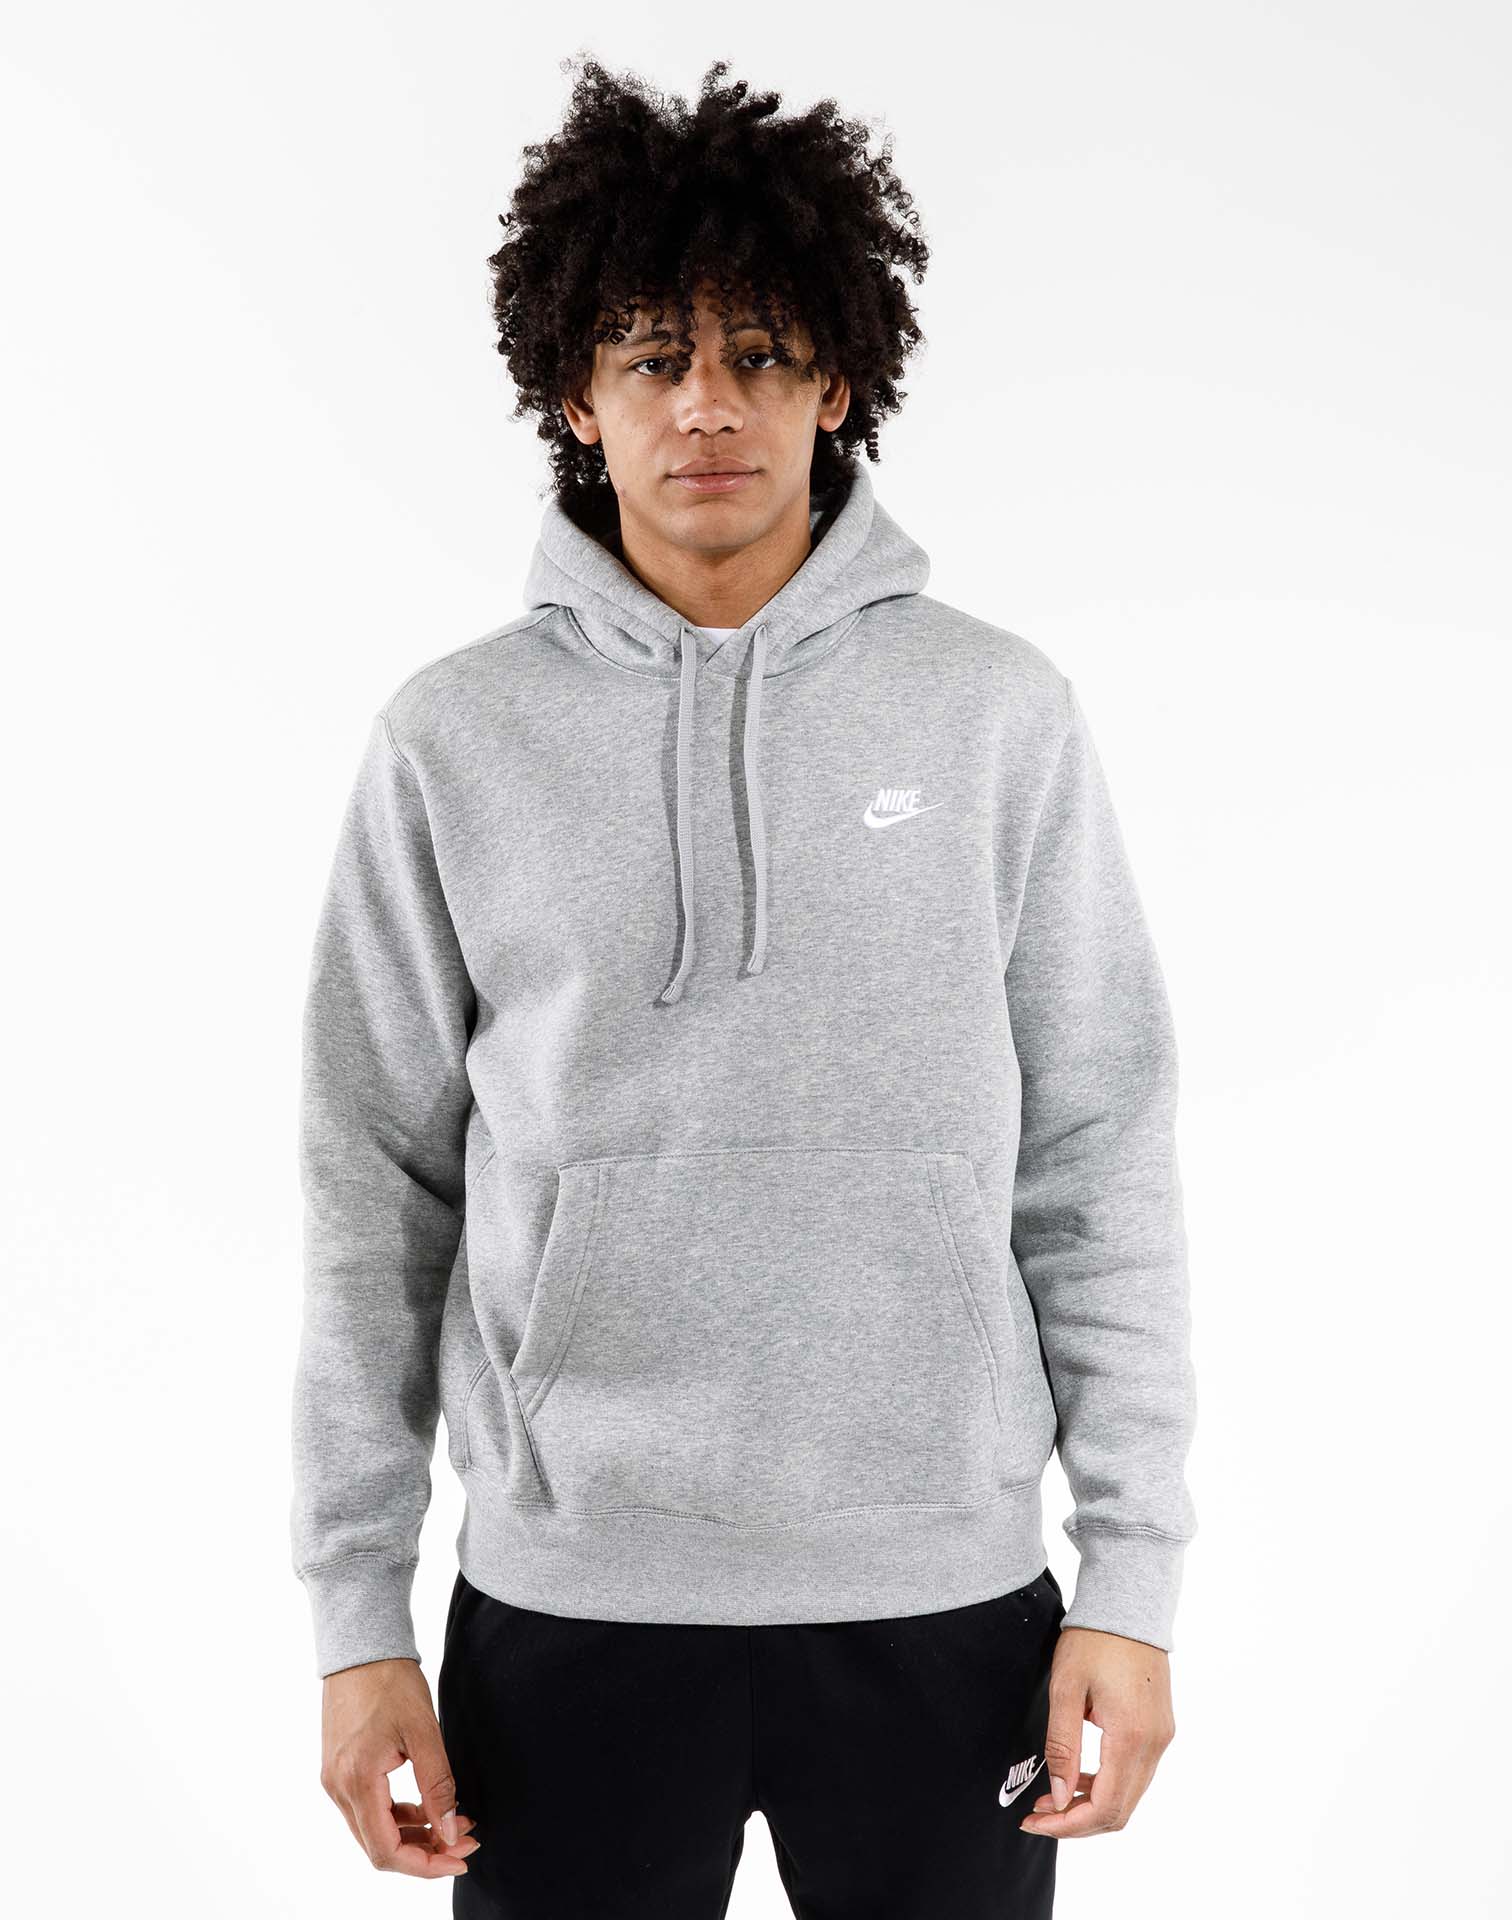 Buy Nike Mens Sportswear Pull Over Club Hooded Sweatshirt - Large